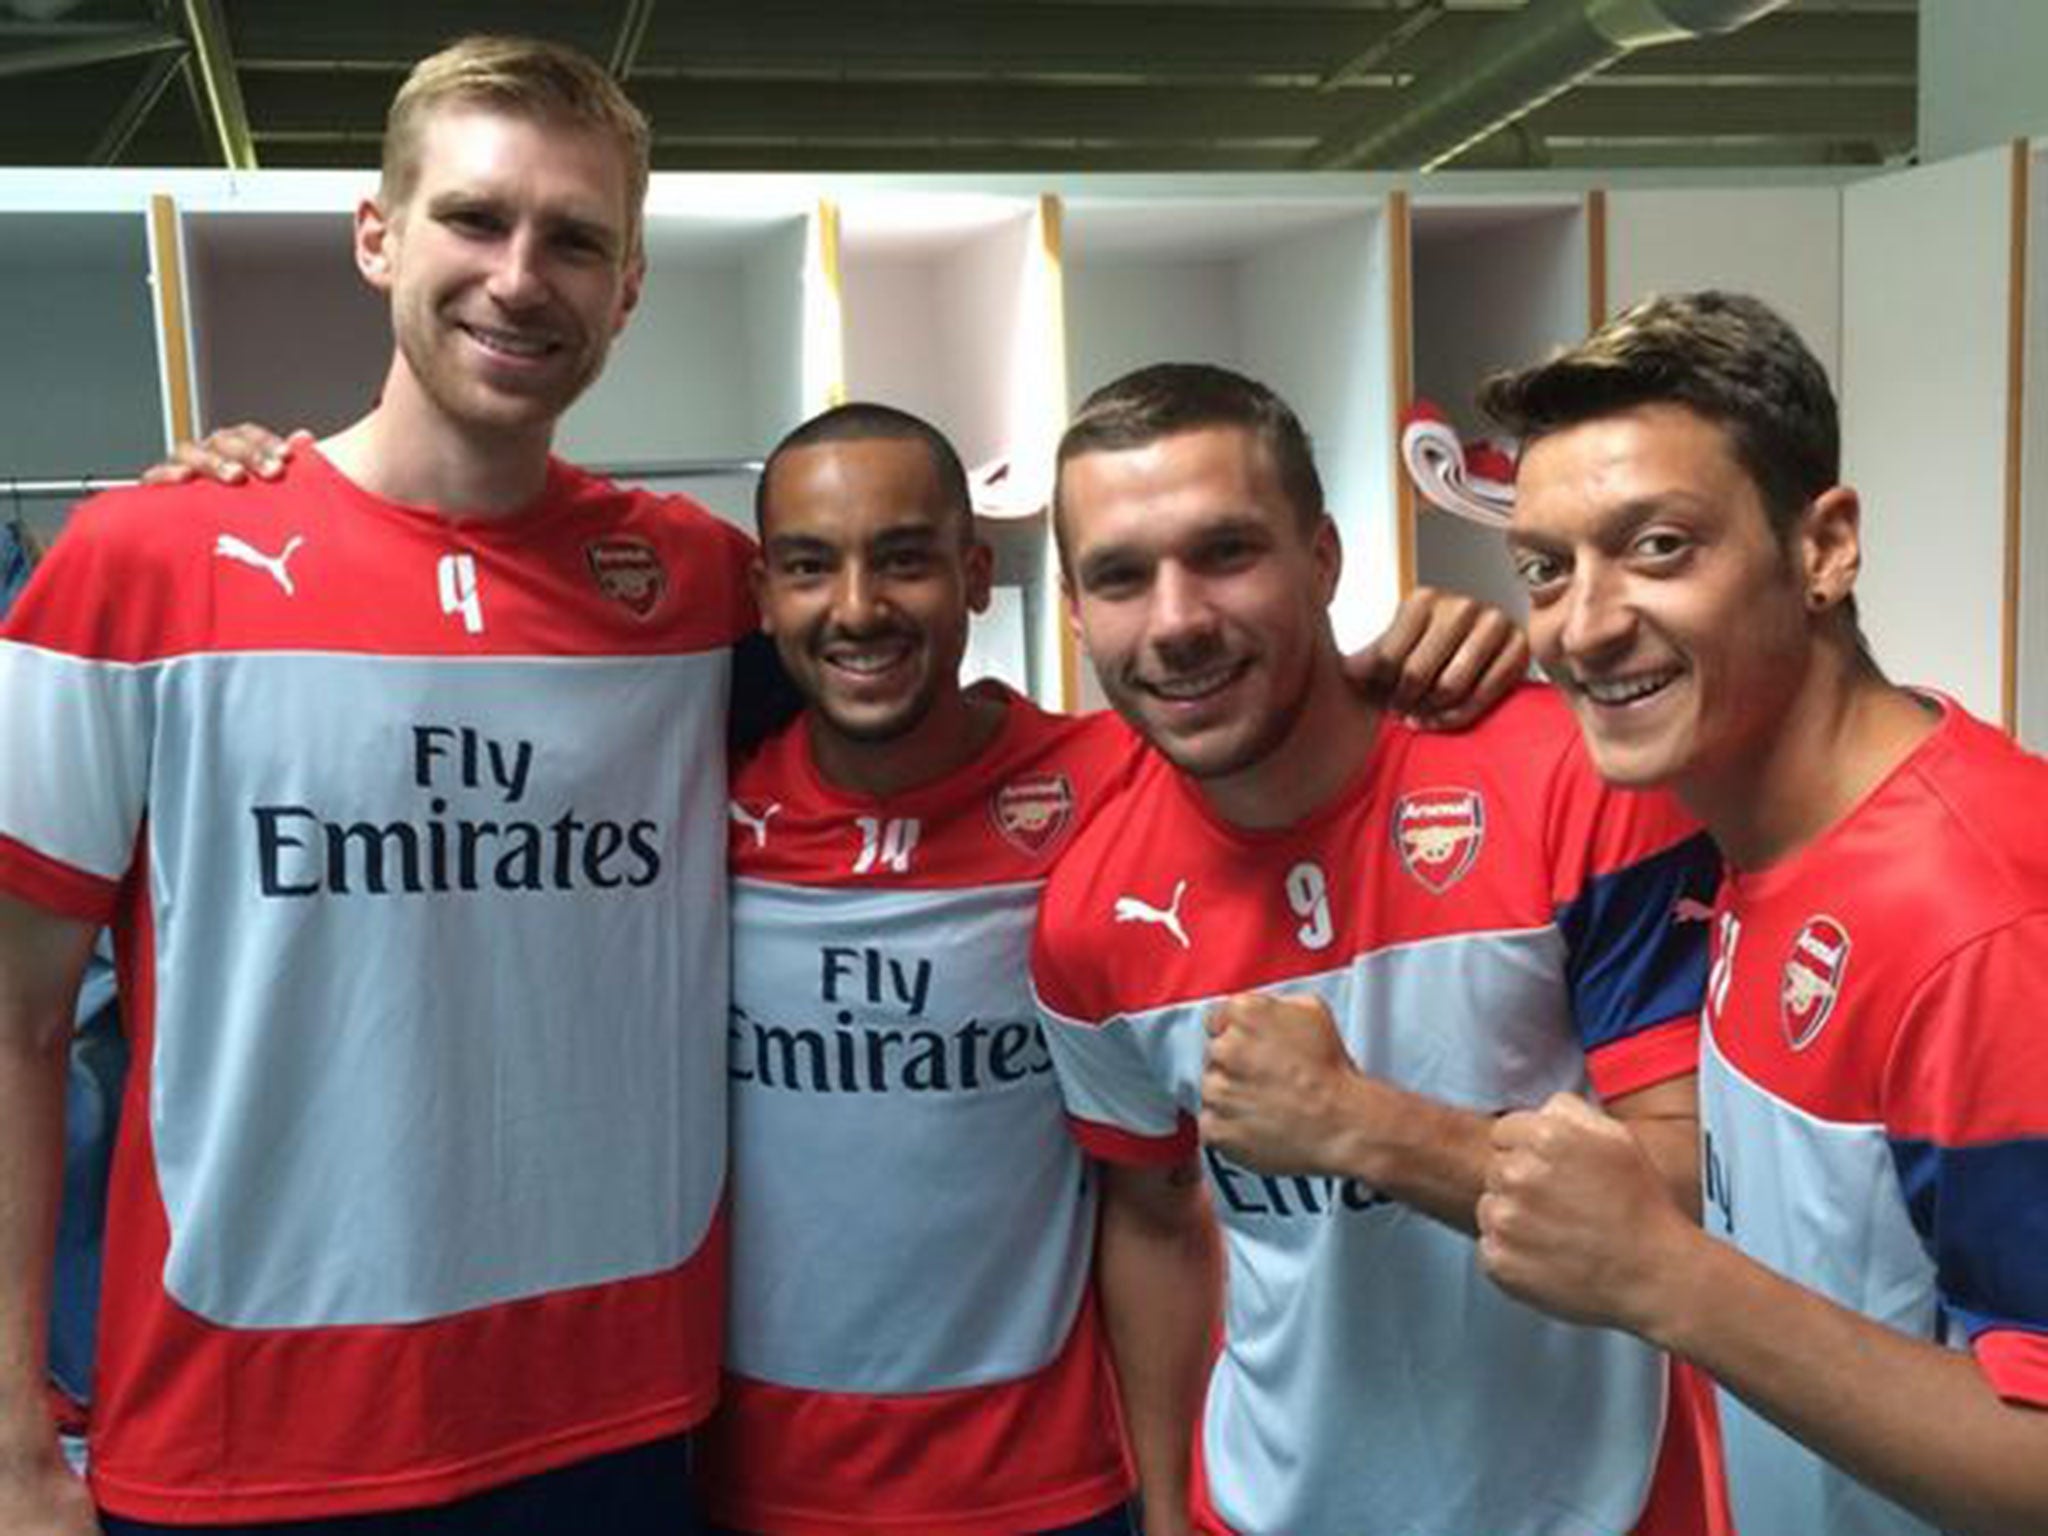 Theo Walcott posted a picture alongside Per Mertesacker, Lukas Podolski and Mezut Ozil